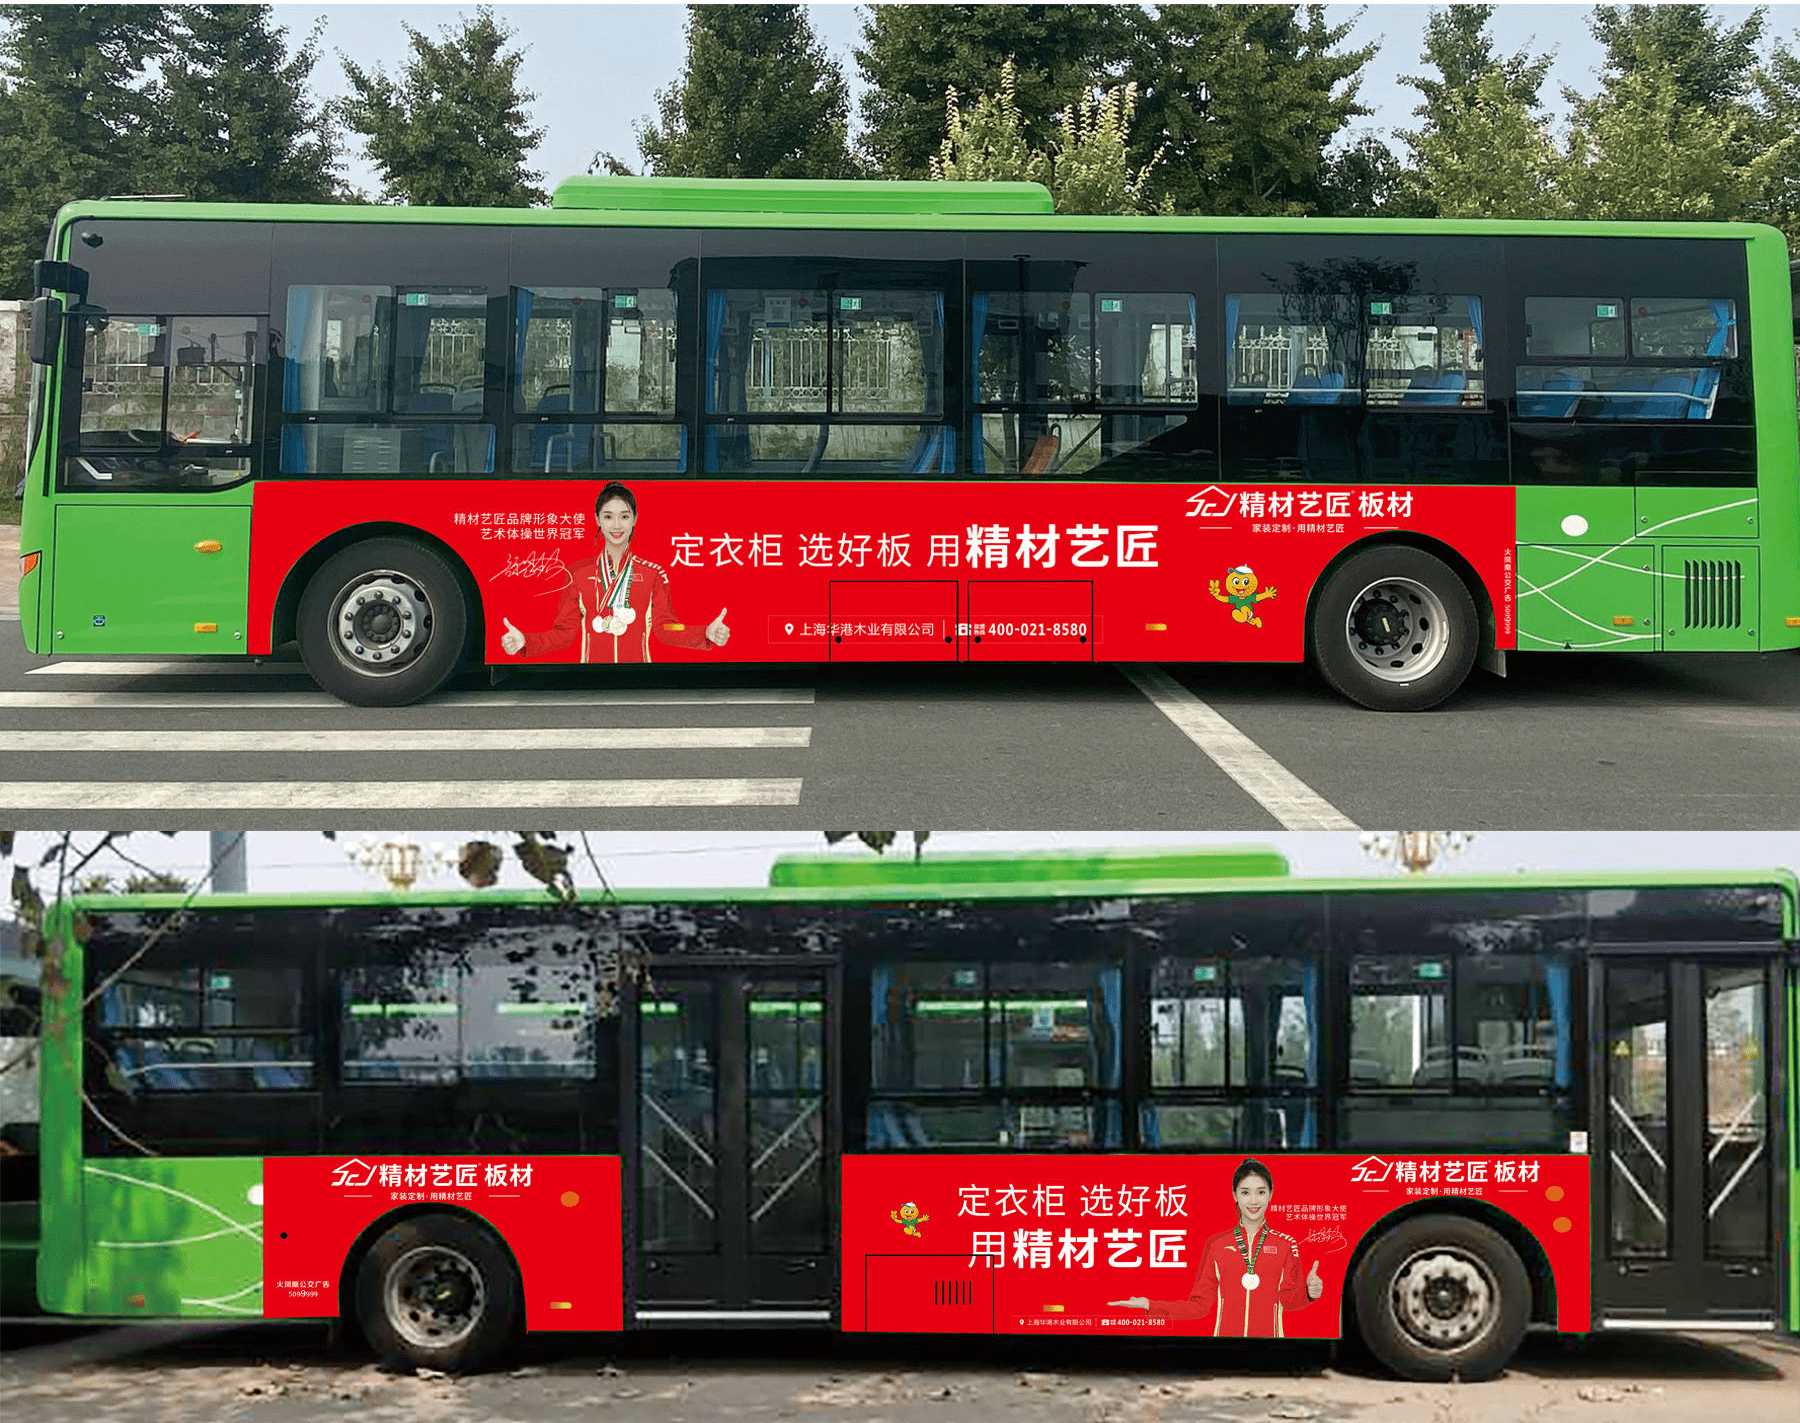 中國板材品牌精材藝匠商丘公交車